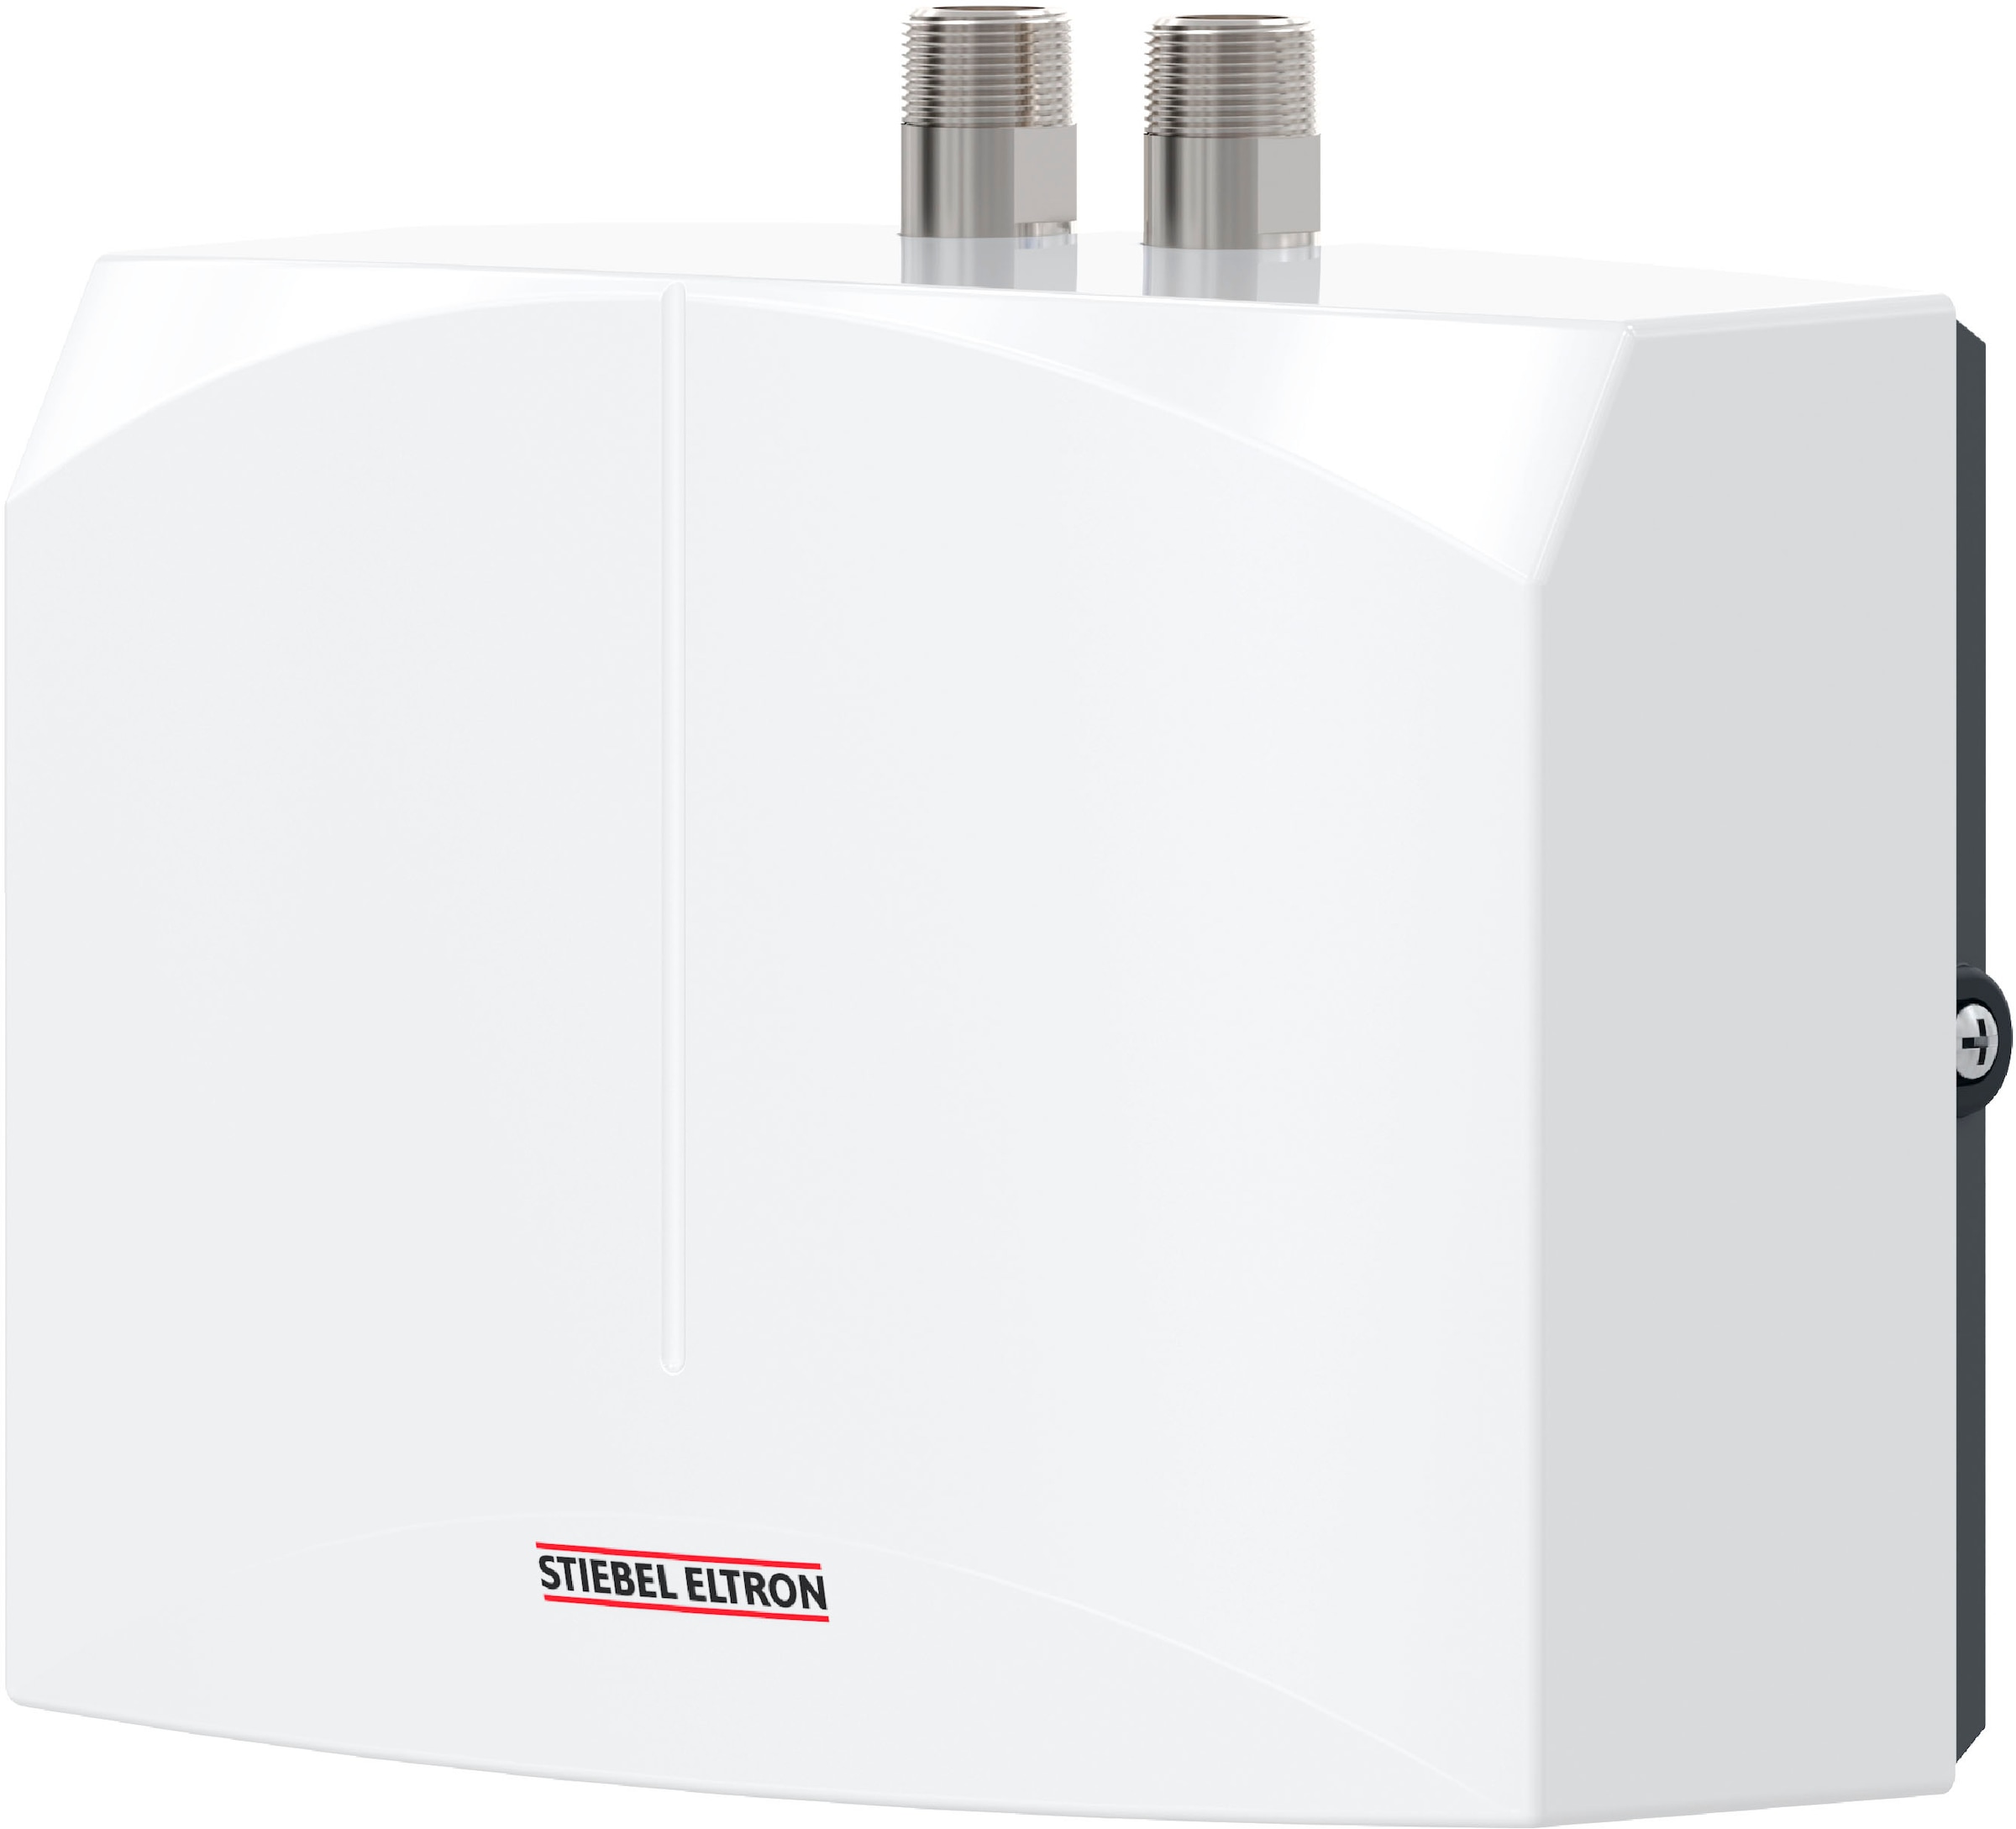 STIEBEL ELTRON Klein-Durchlauferhitzer »DEM 4«, elektronisch, für Handwaschbecken, 4,4 kW, Festanschluss 230V